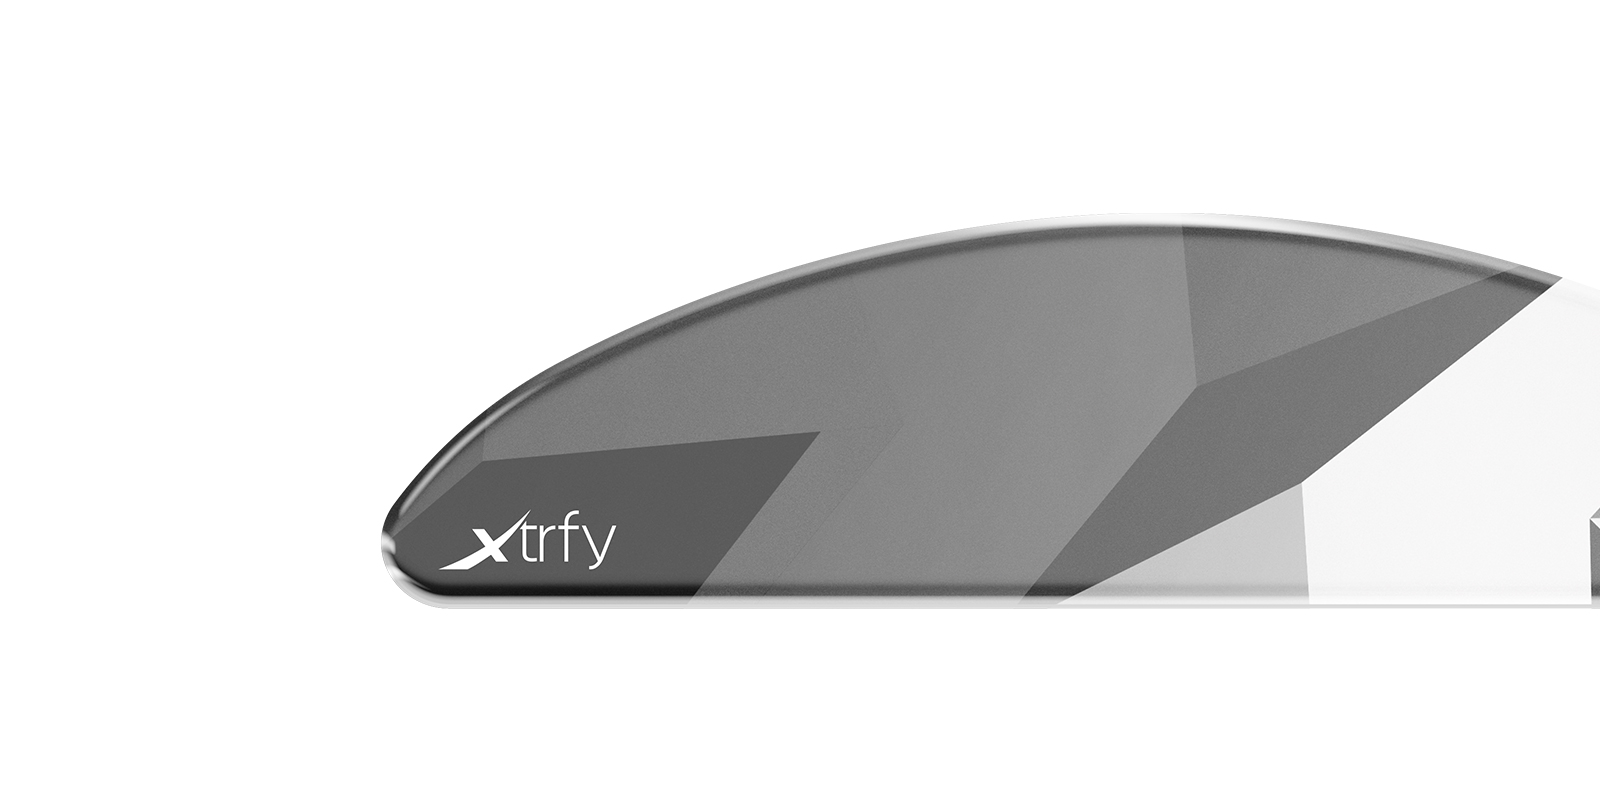 m8-wireless-glass-skates - Built On Experience －Xtrfy Japan